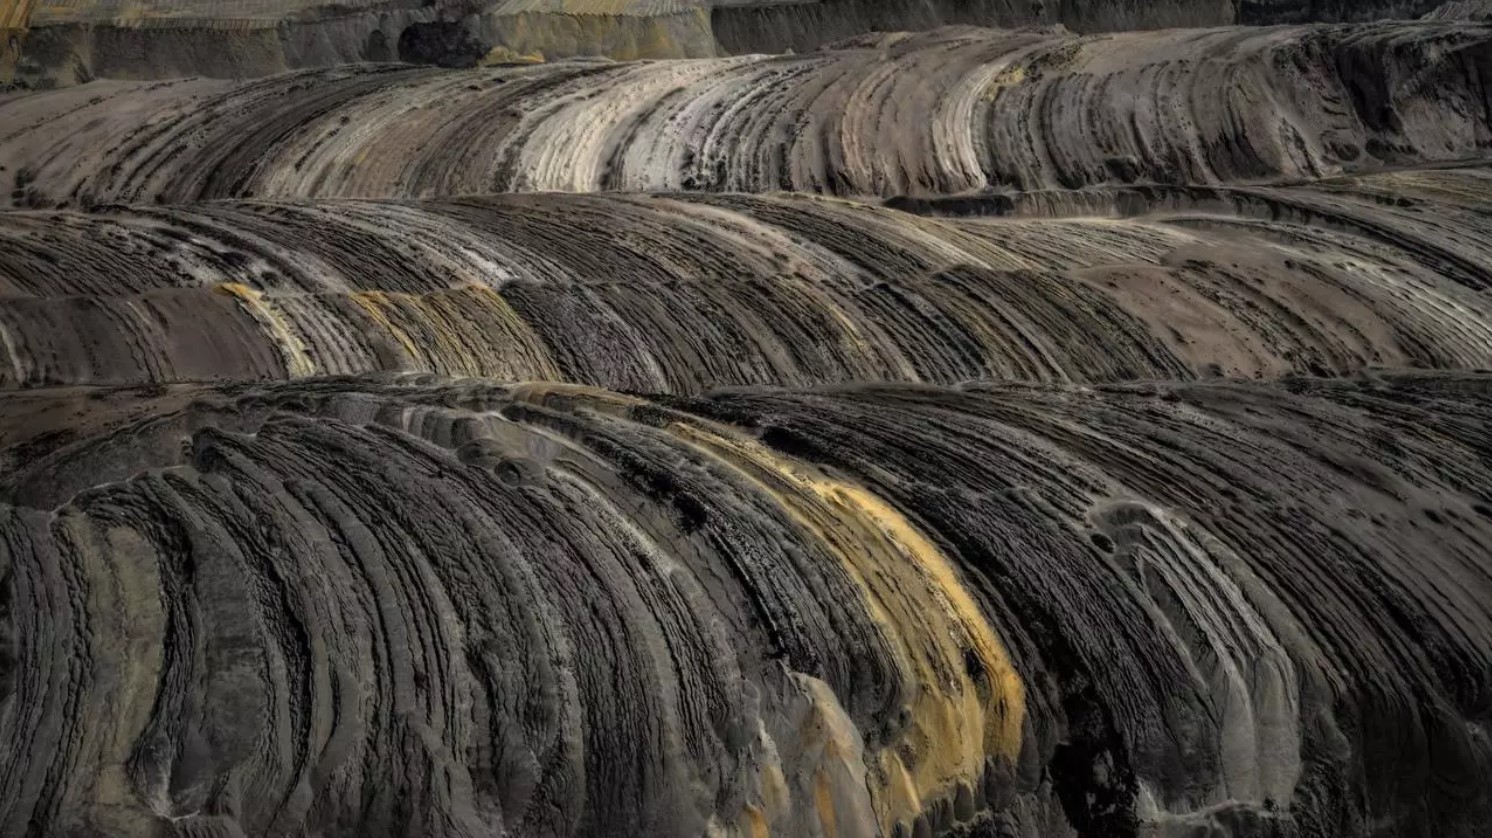 Mine expansion threatens German villages despite coal exit